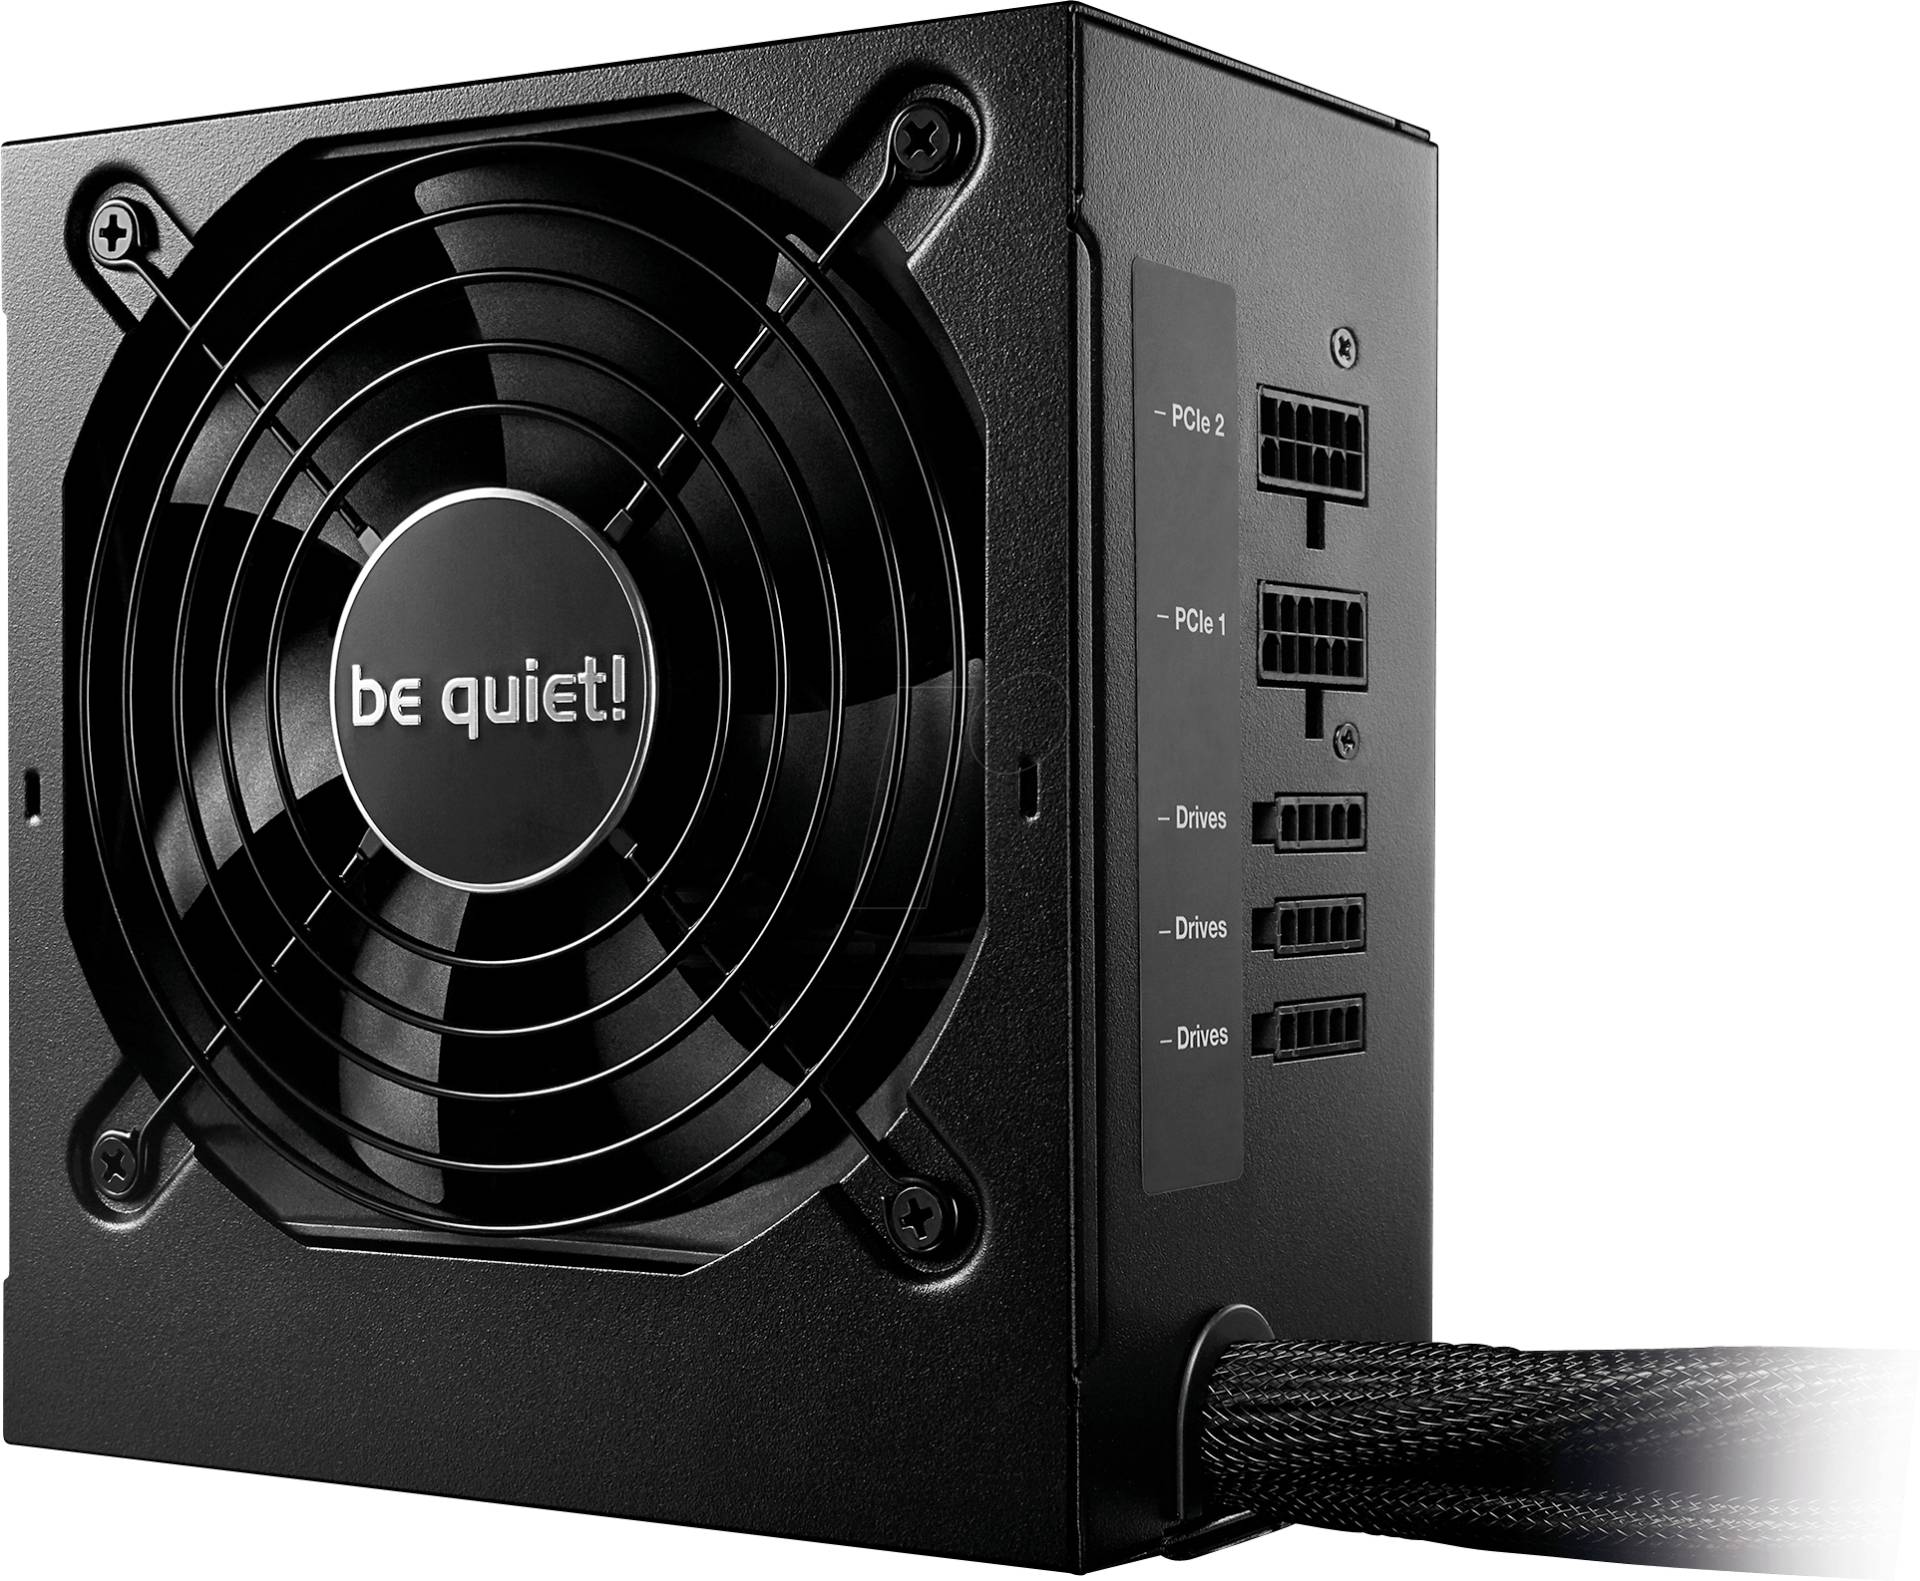 BQT BN302 - be quiet! System Power 9 600W CM von BEQUIET